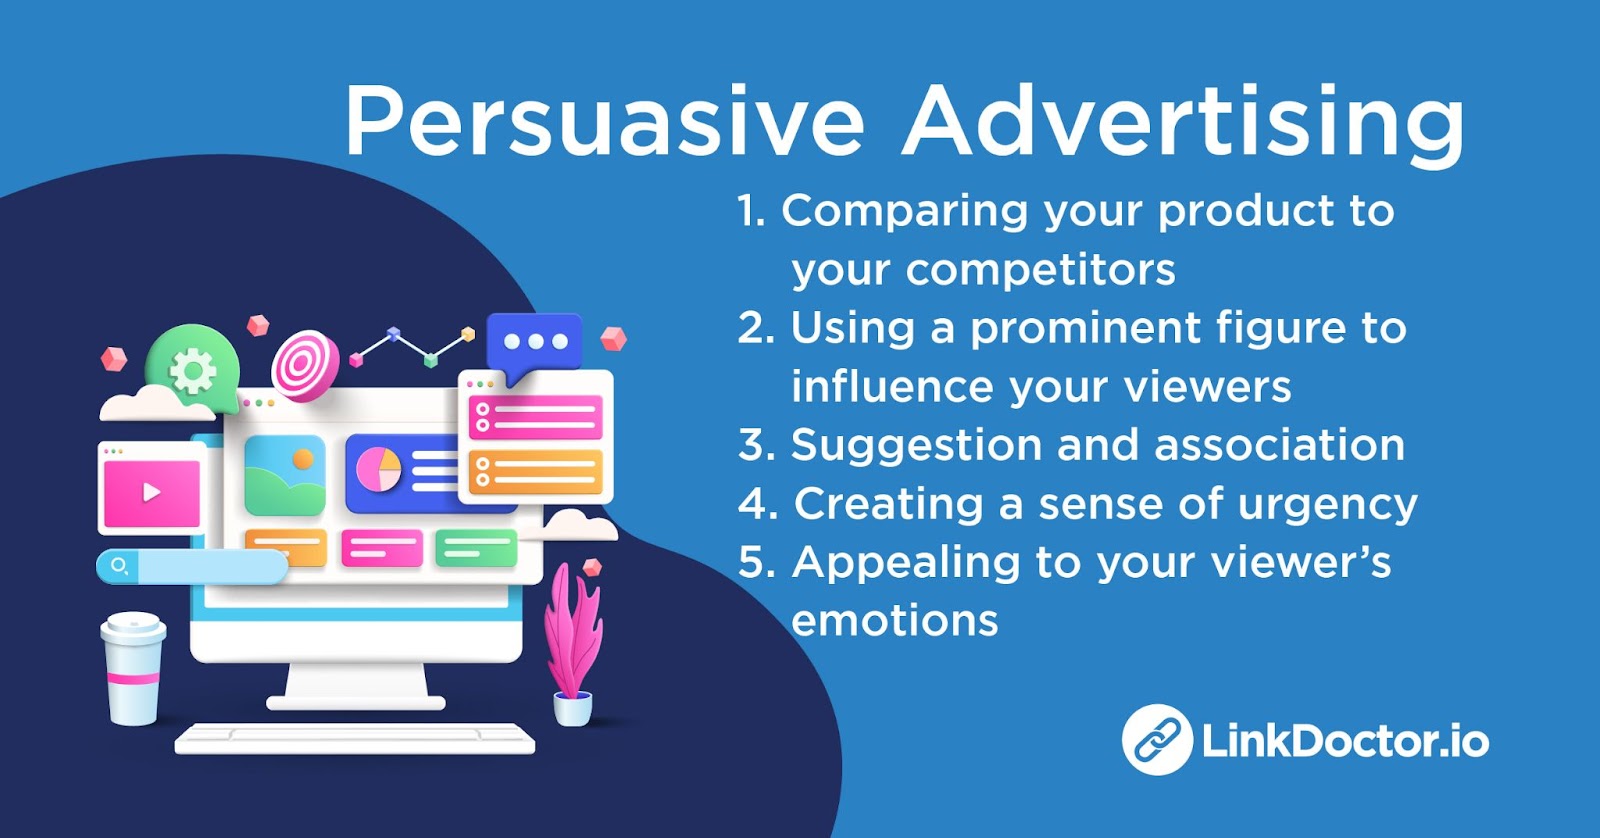 Persuasive Advertising 5 Memorable Advertisements